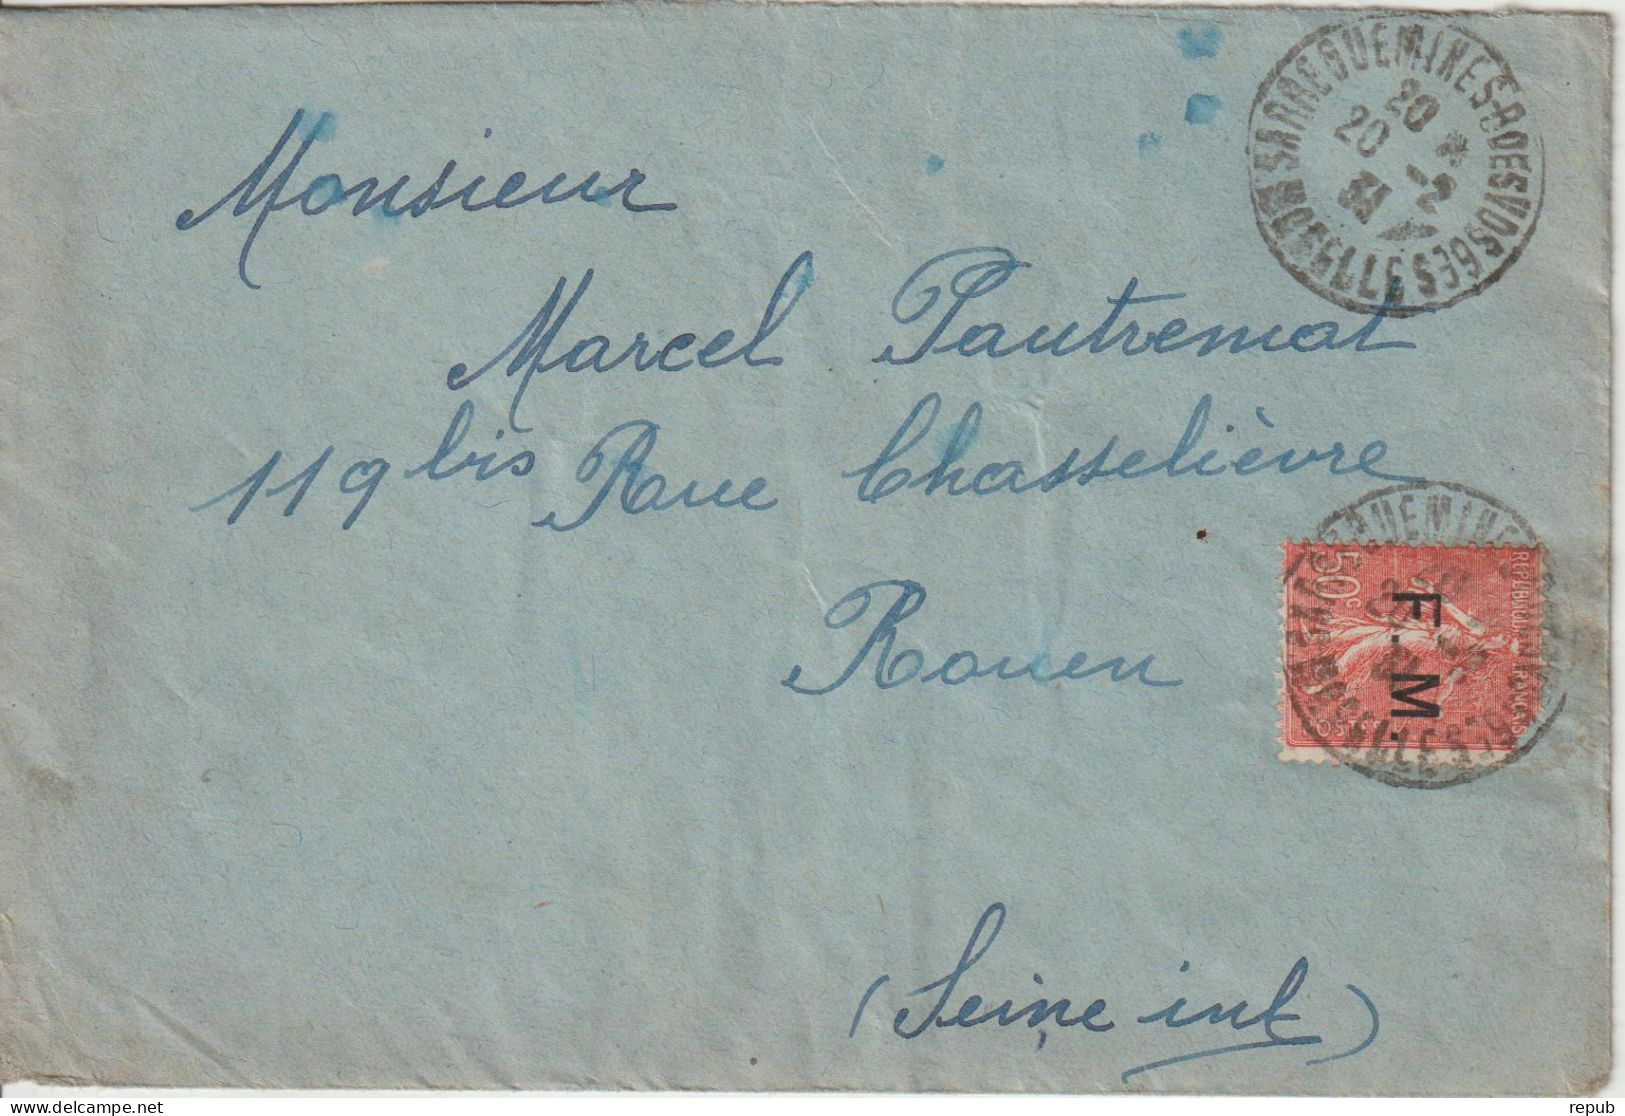 Lettre En Franchise FM 6 Oblitération 1931 Sarreguemines Avec Vignette Au Verso - Military Postage Stamps